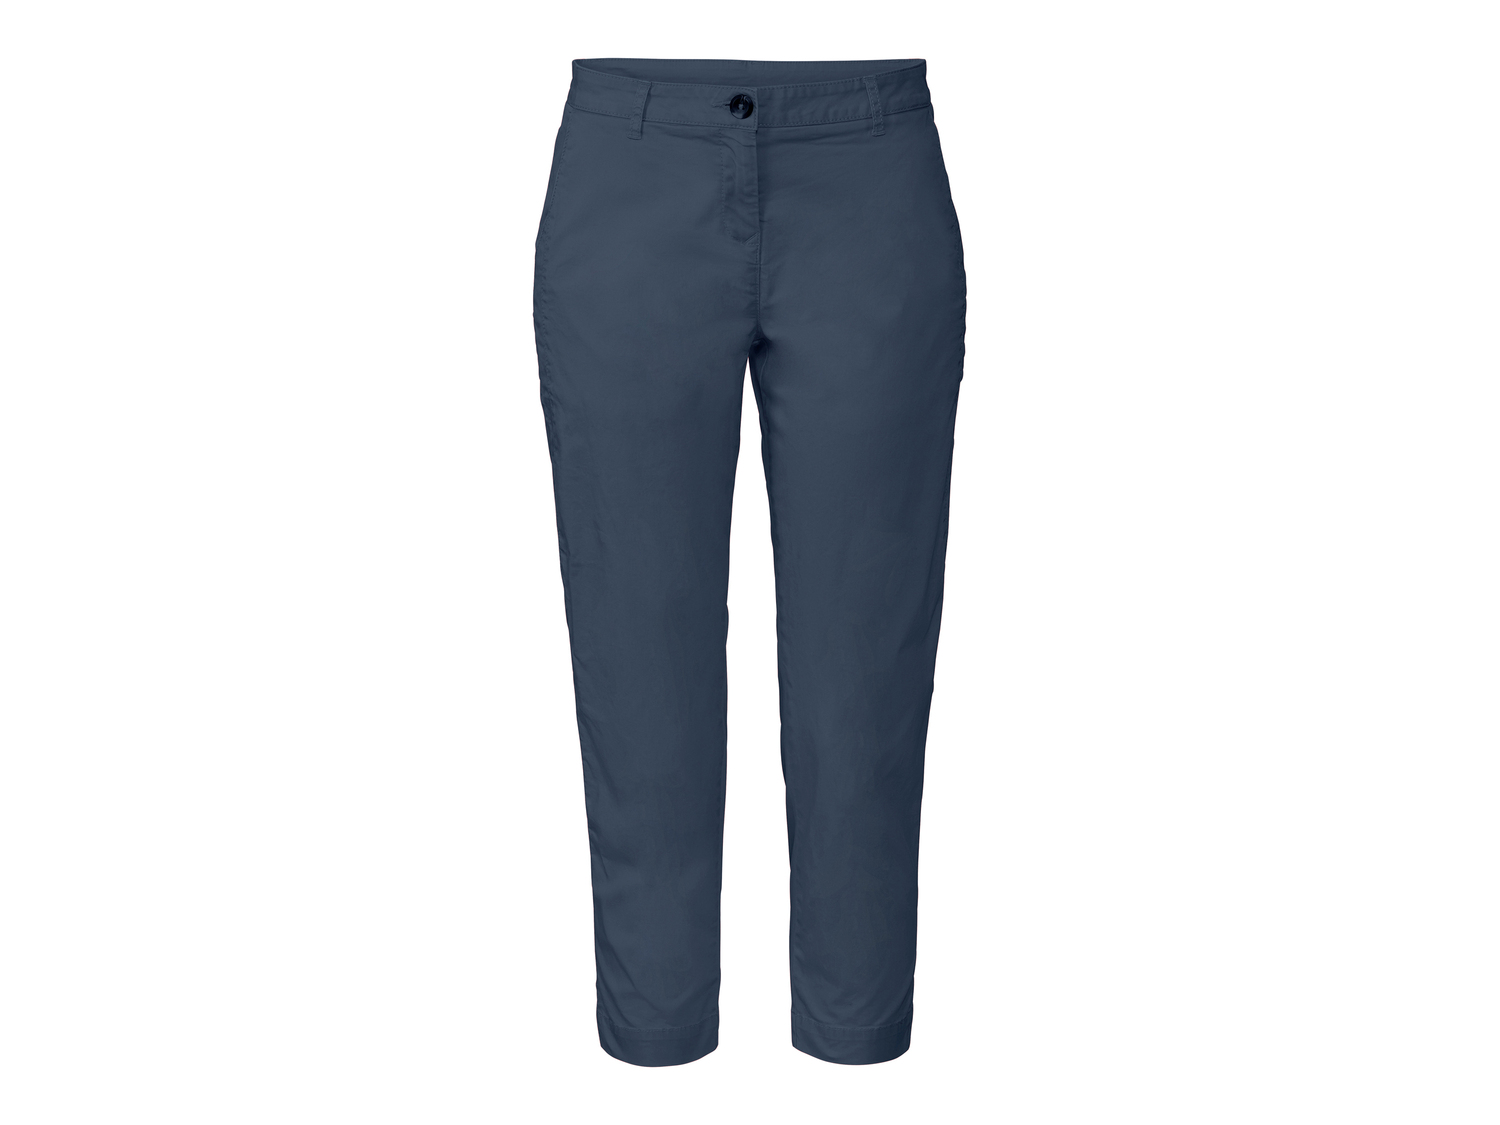 Pantaloni da donna Esmara, prezzo 9.99 &#8364; 
Misure: 38-46
Taglie disponibili

Caratteristiche

- ...